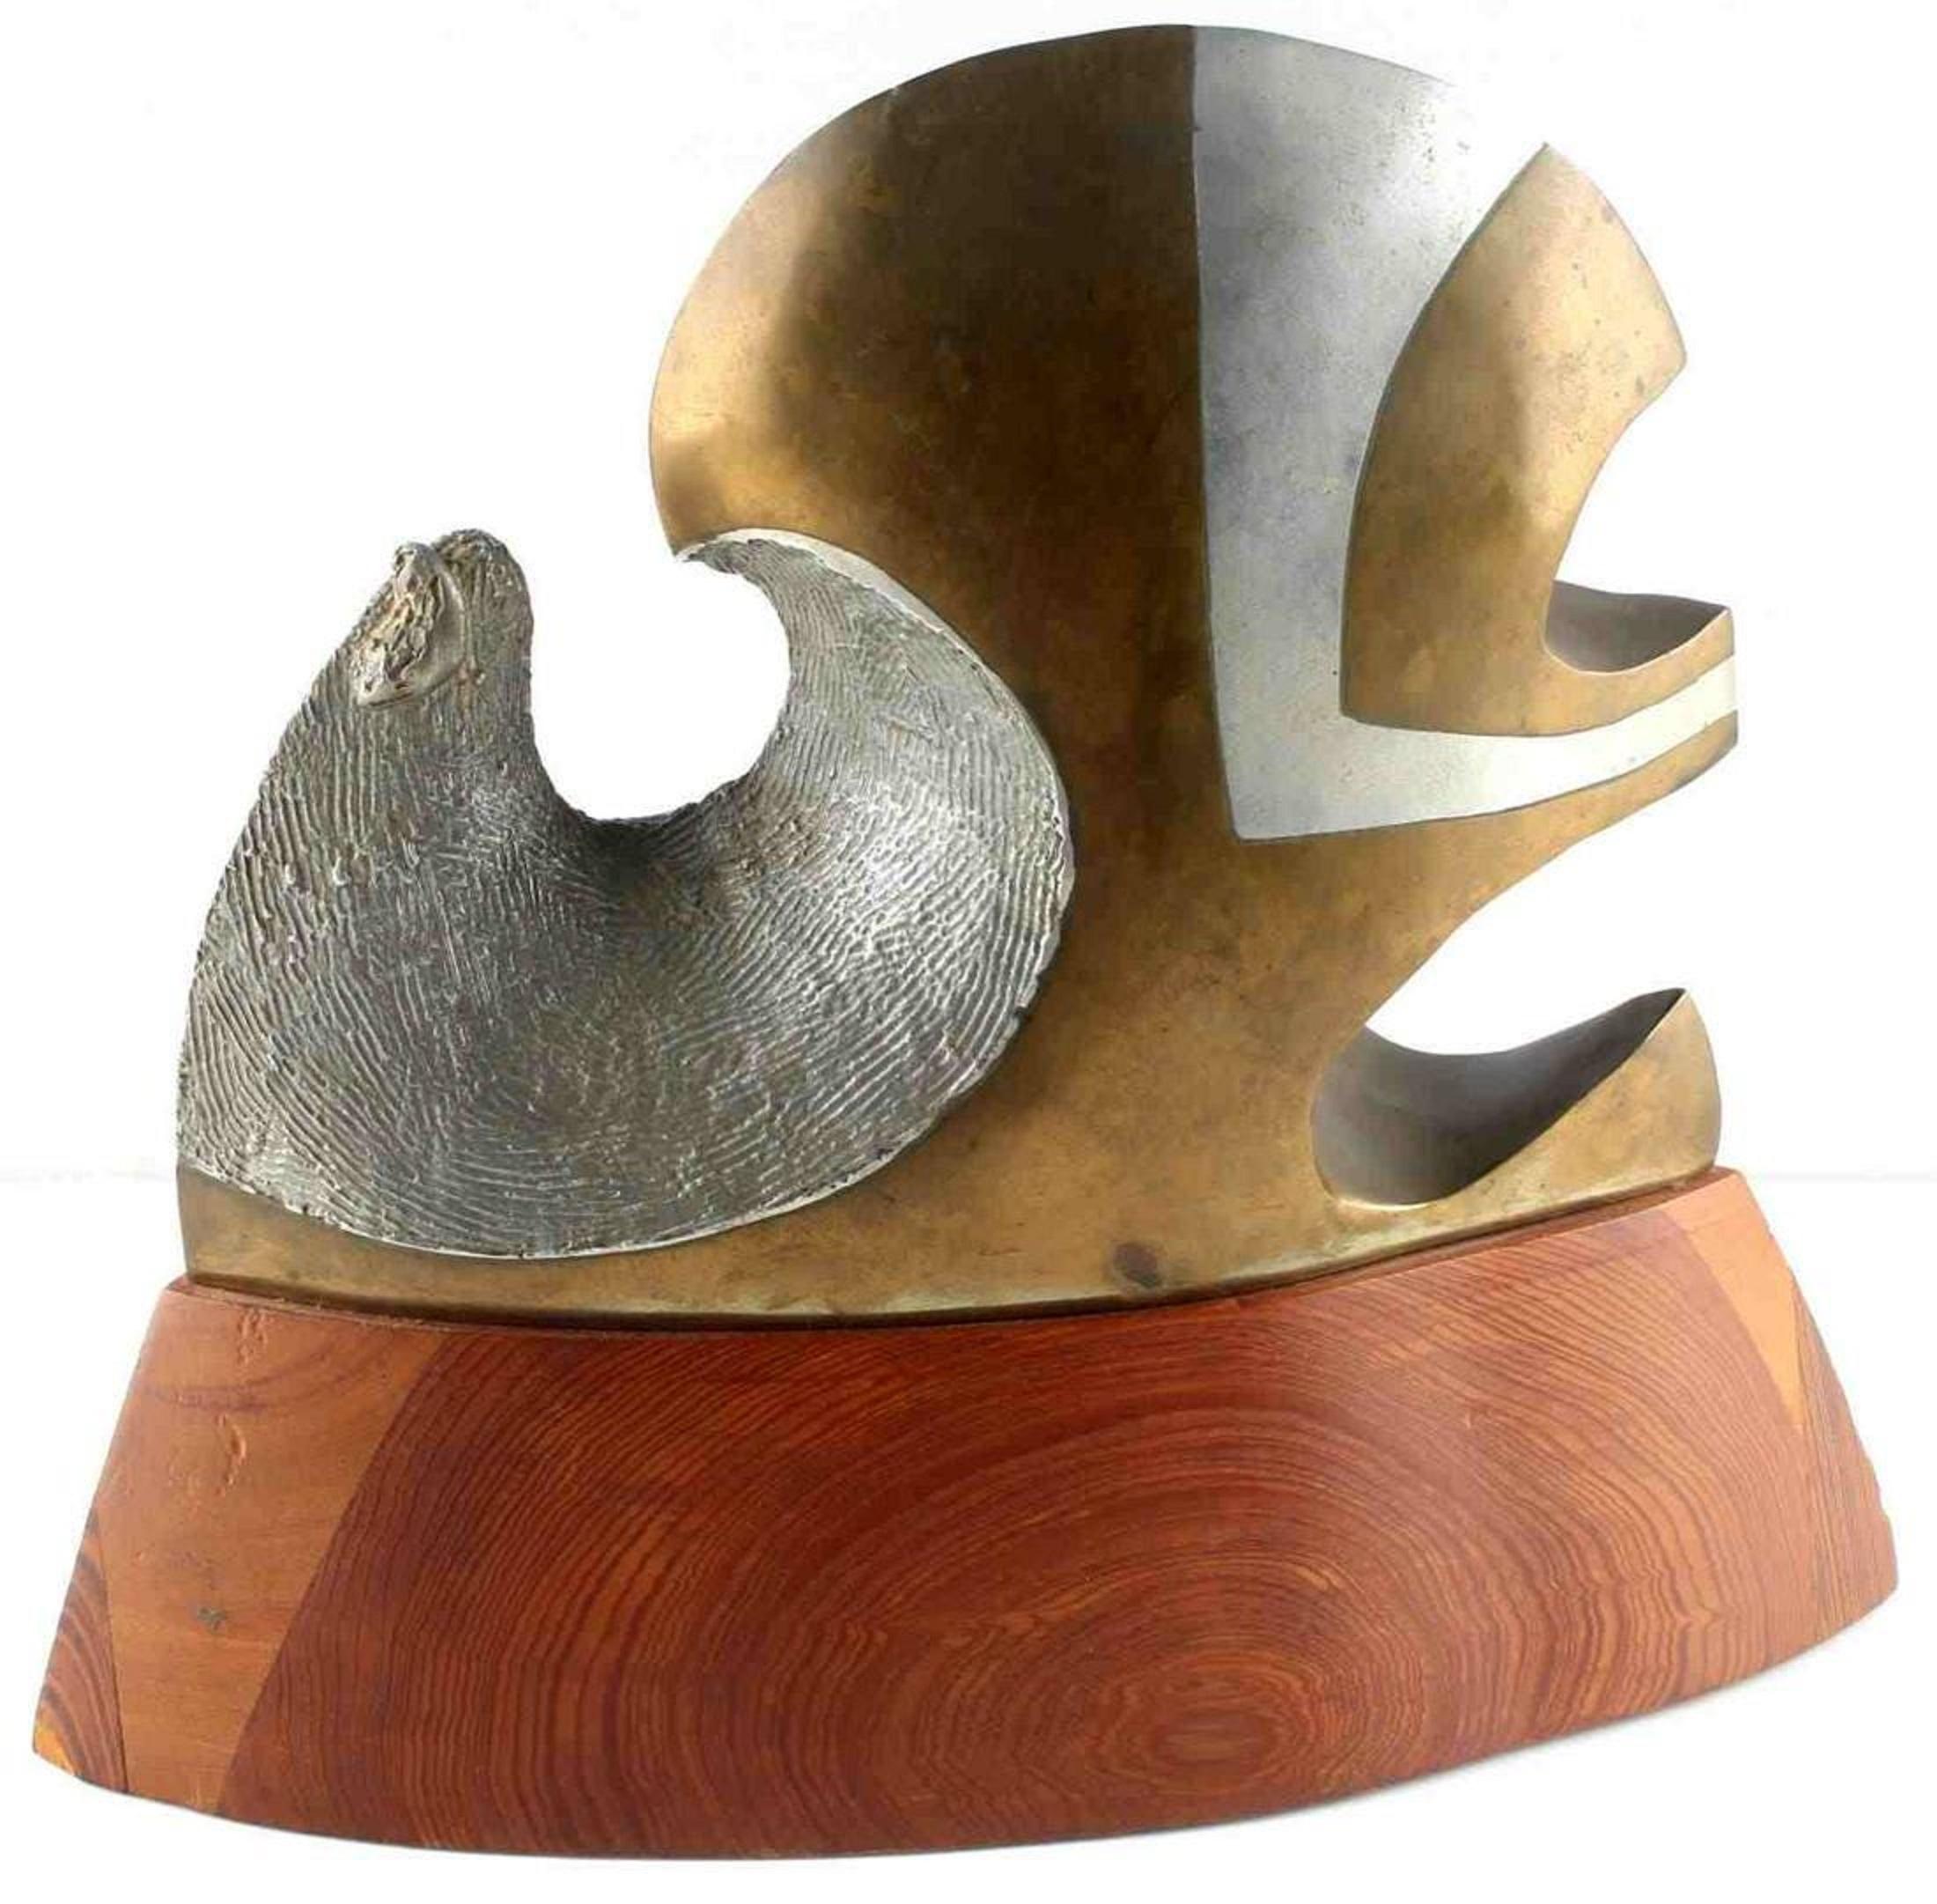 Chester Williams, schwarzer Künstler, Abstrakte Bronze, Holz, afroamerikanische Skulptur – Sculpture von Chester Williams 